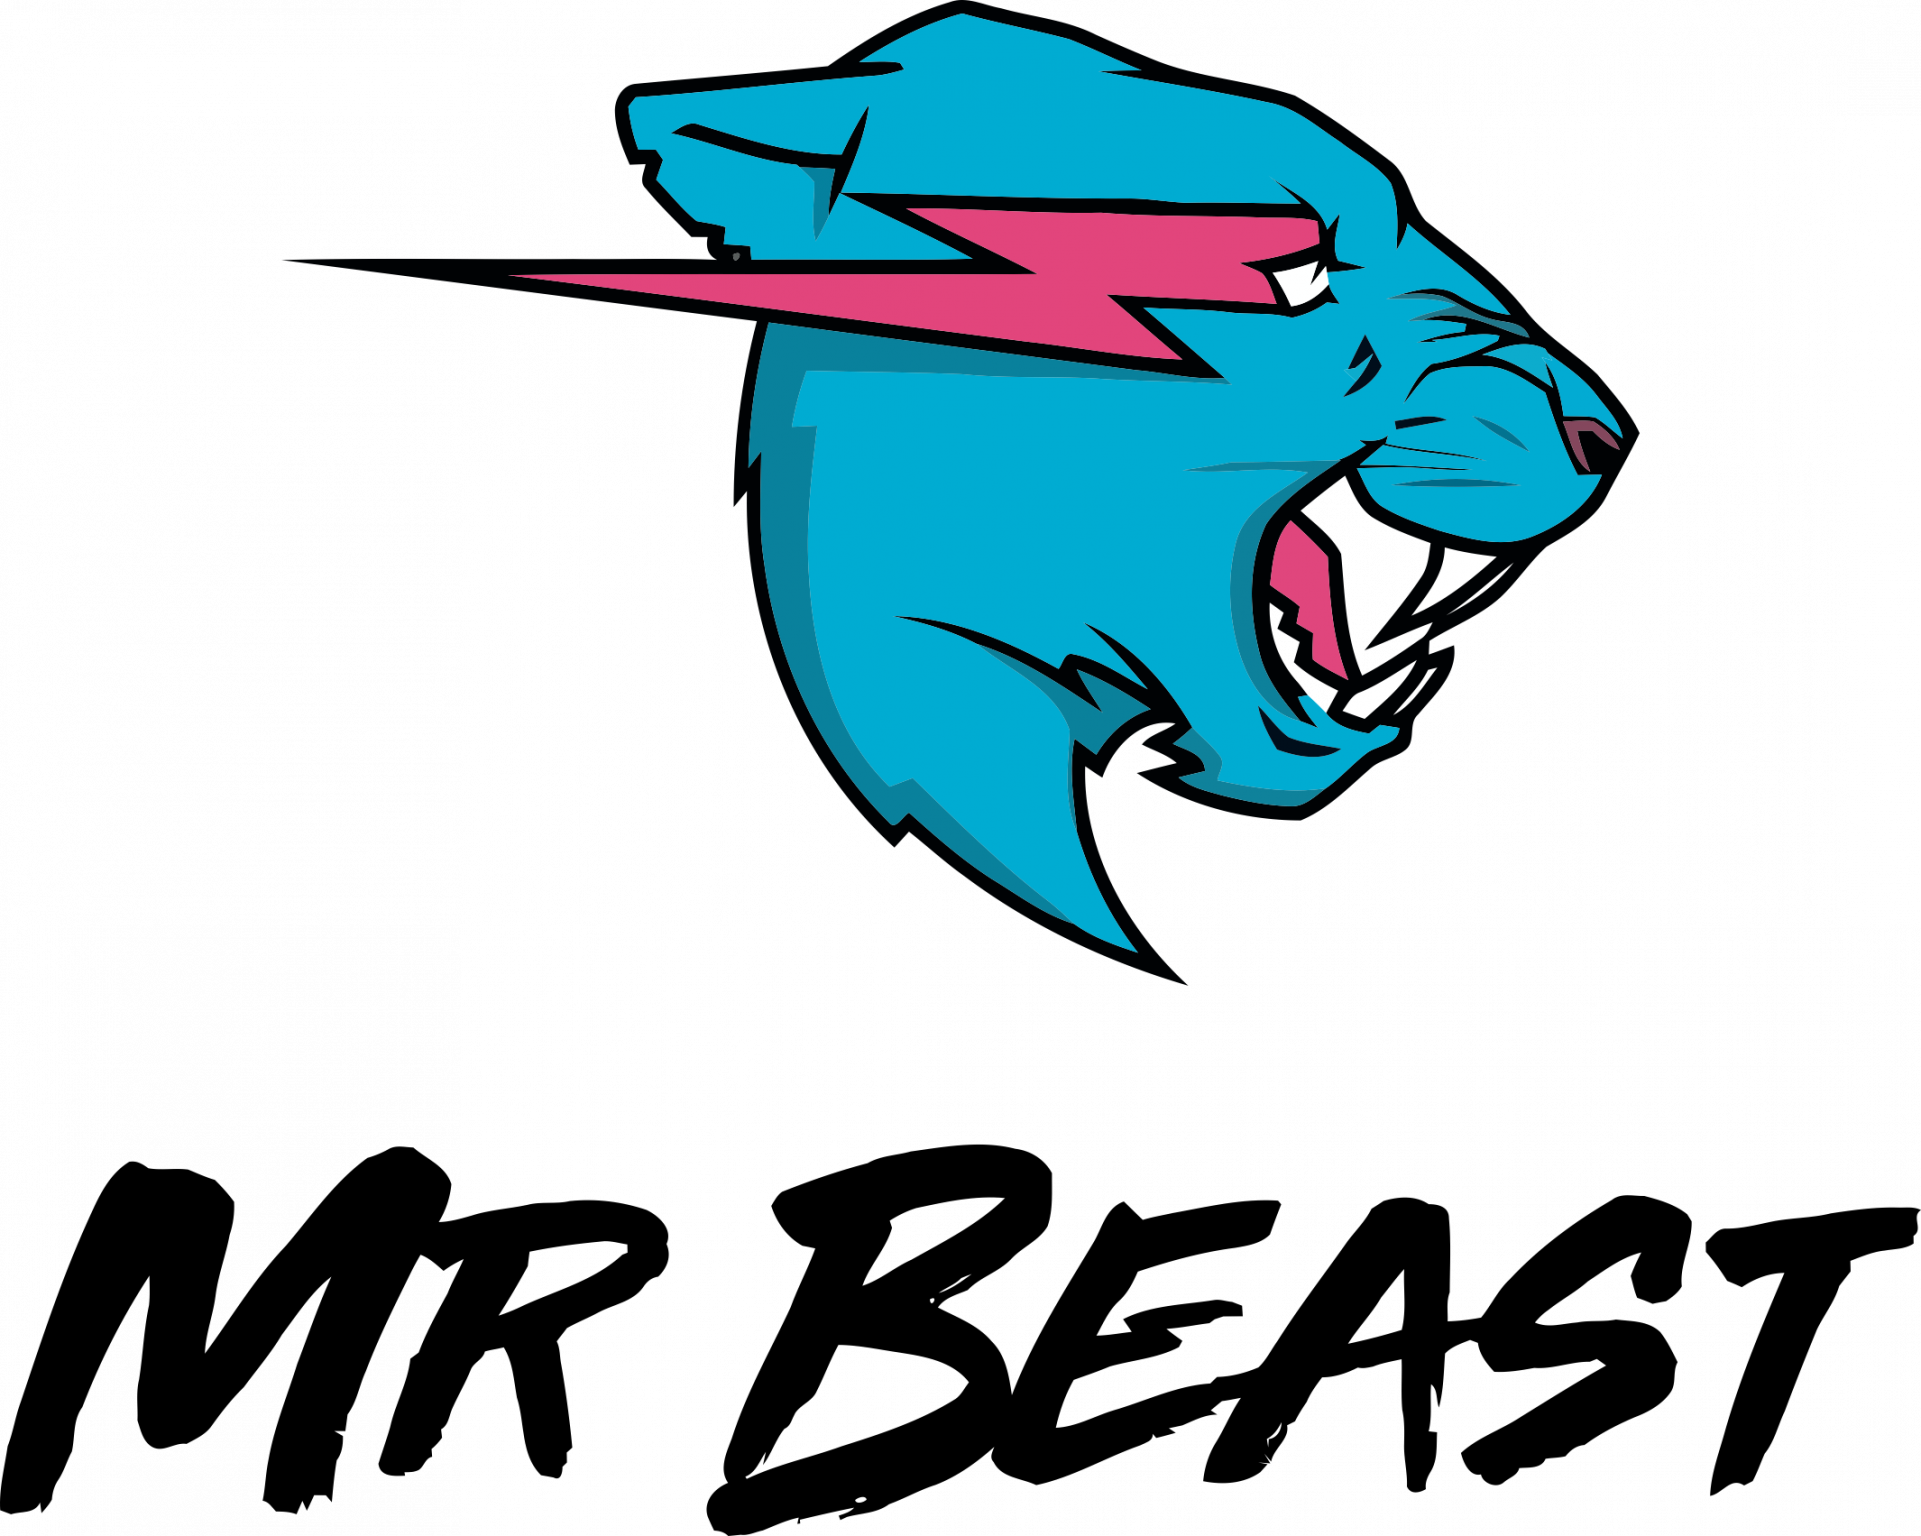 Mr beast fan. Мистер Бист. Логотип MRBEAST. MRBEAST аватарка. MRBEAST на русском.